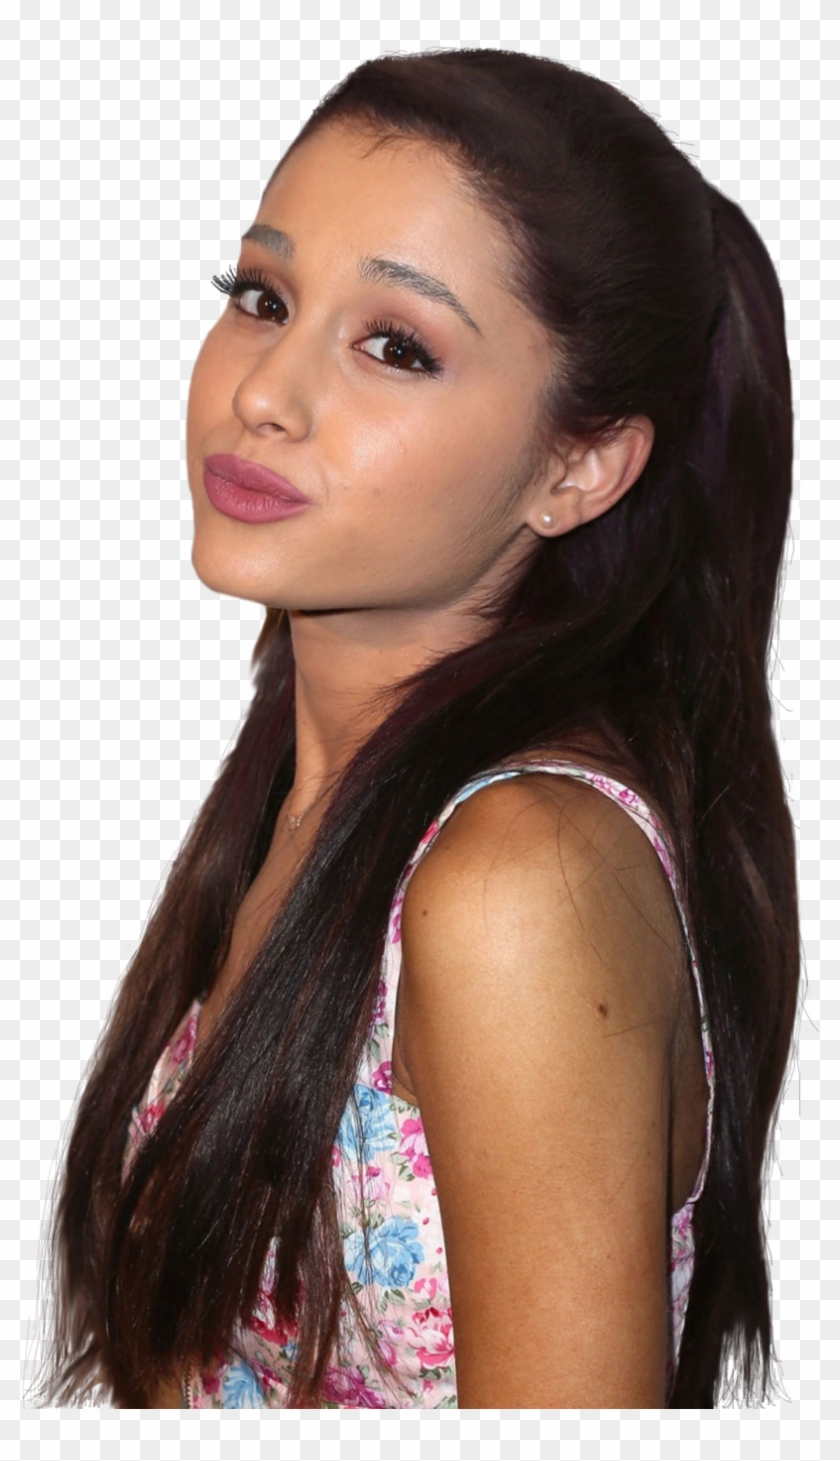 Ariana Grande Wallpaper 5 Pack Digital Download 